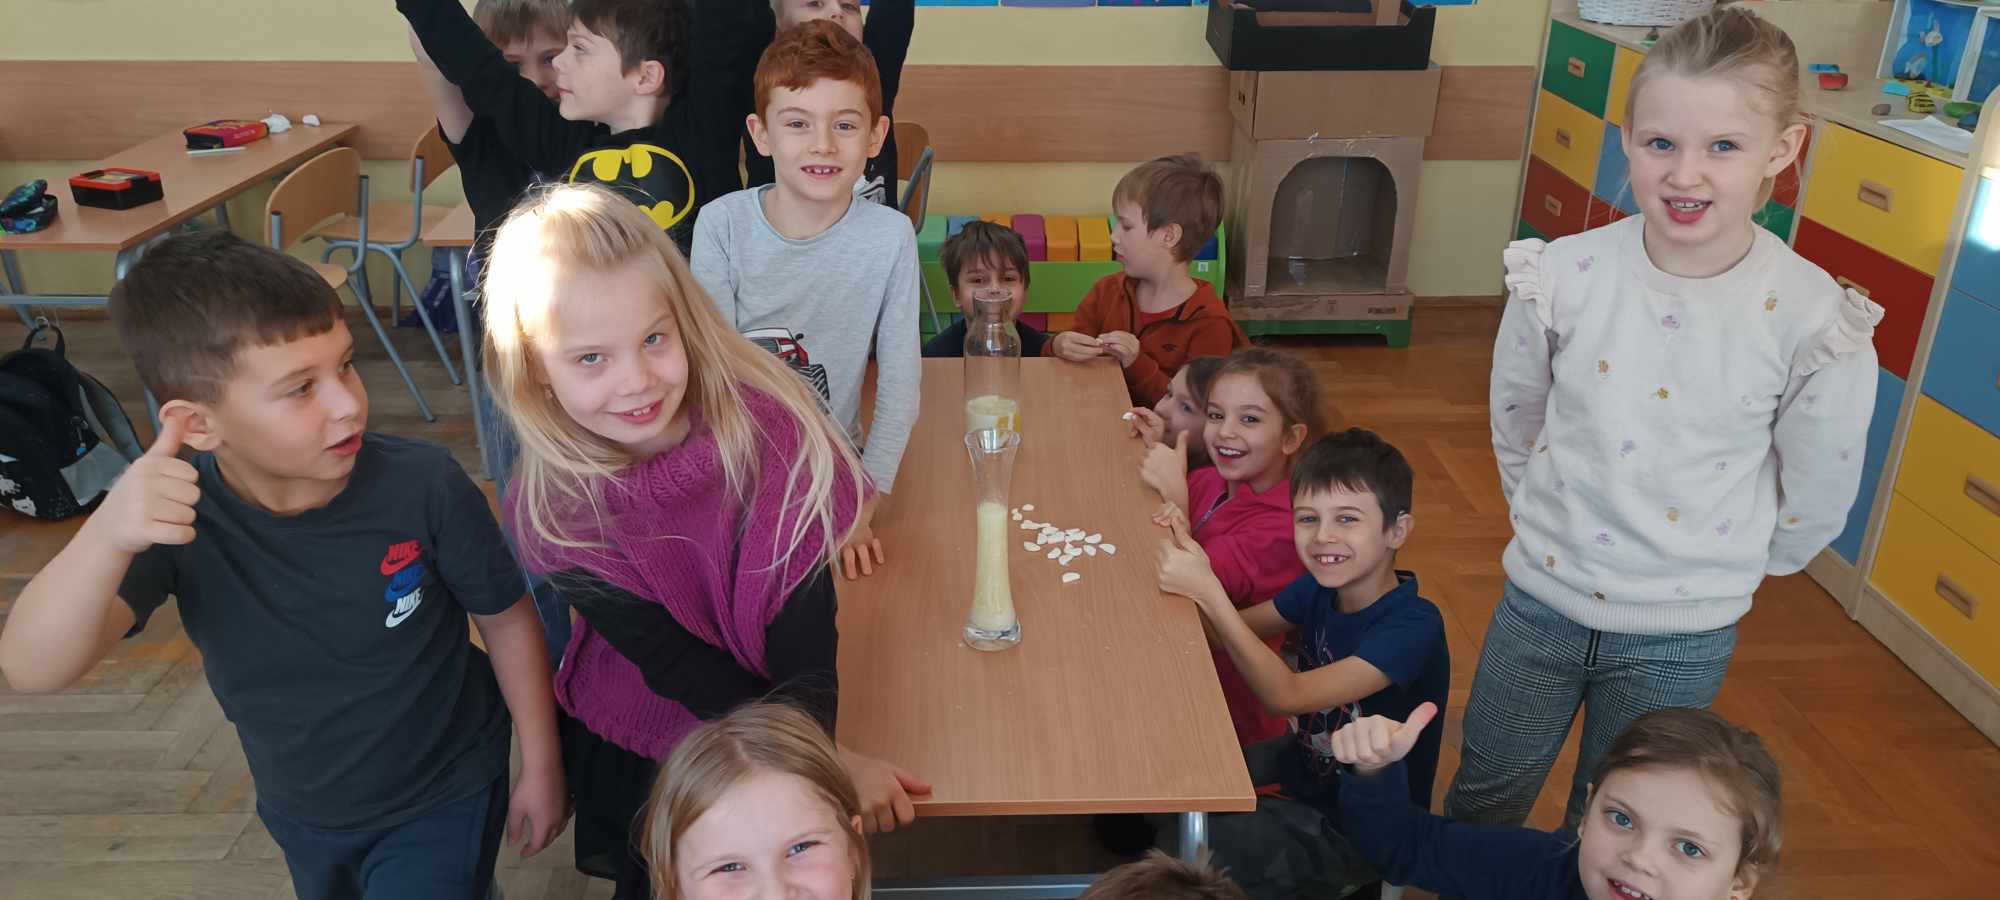 Grupa dzieci w klasie szkolnej stojąca wokół stołu. Na stole dwa szklane naczynia z kolorową cieczą.